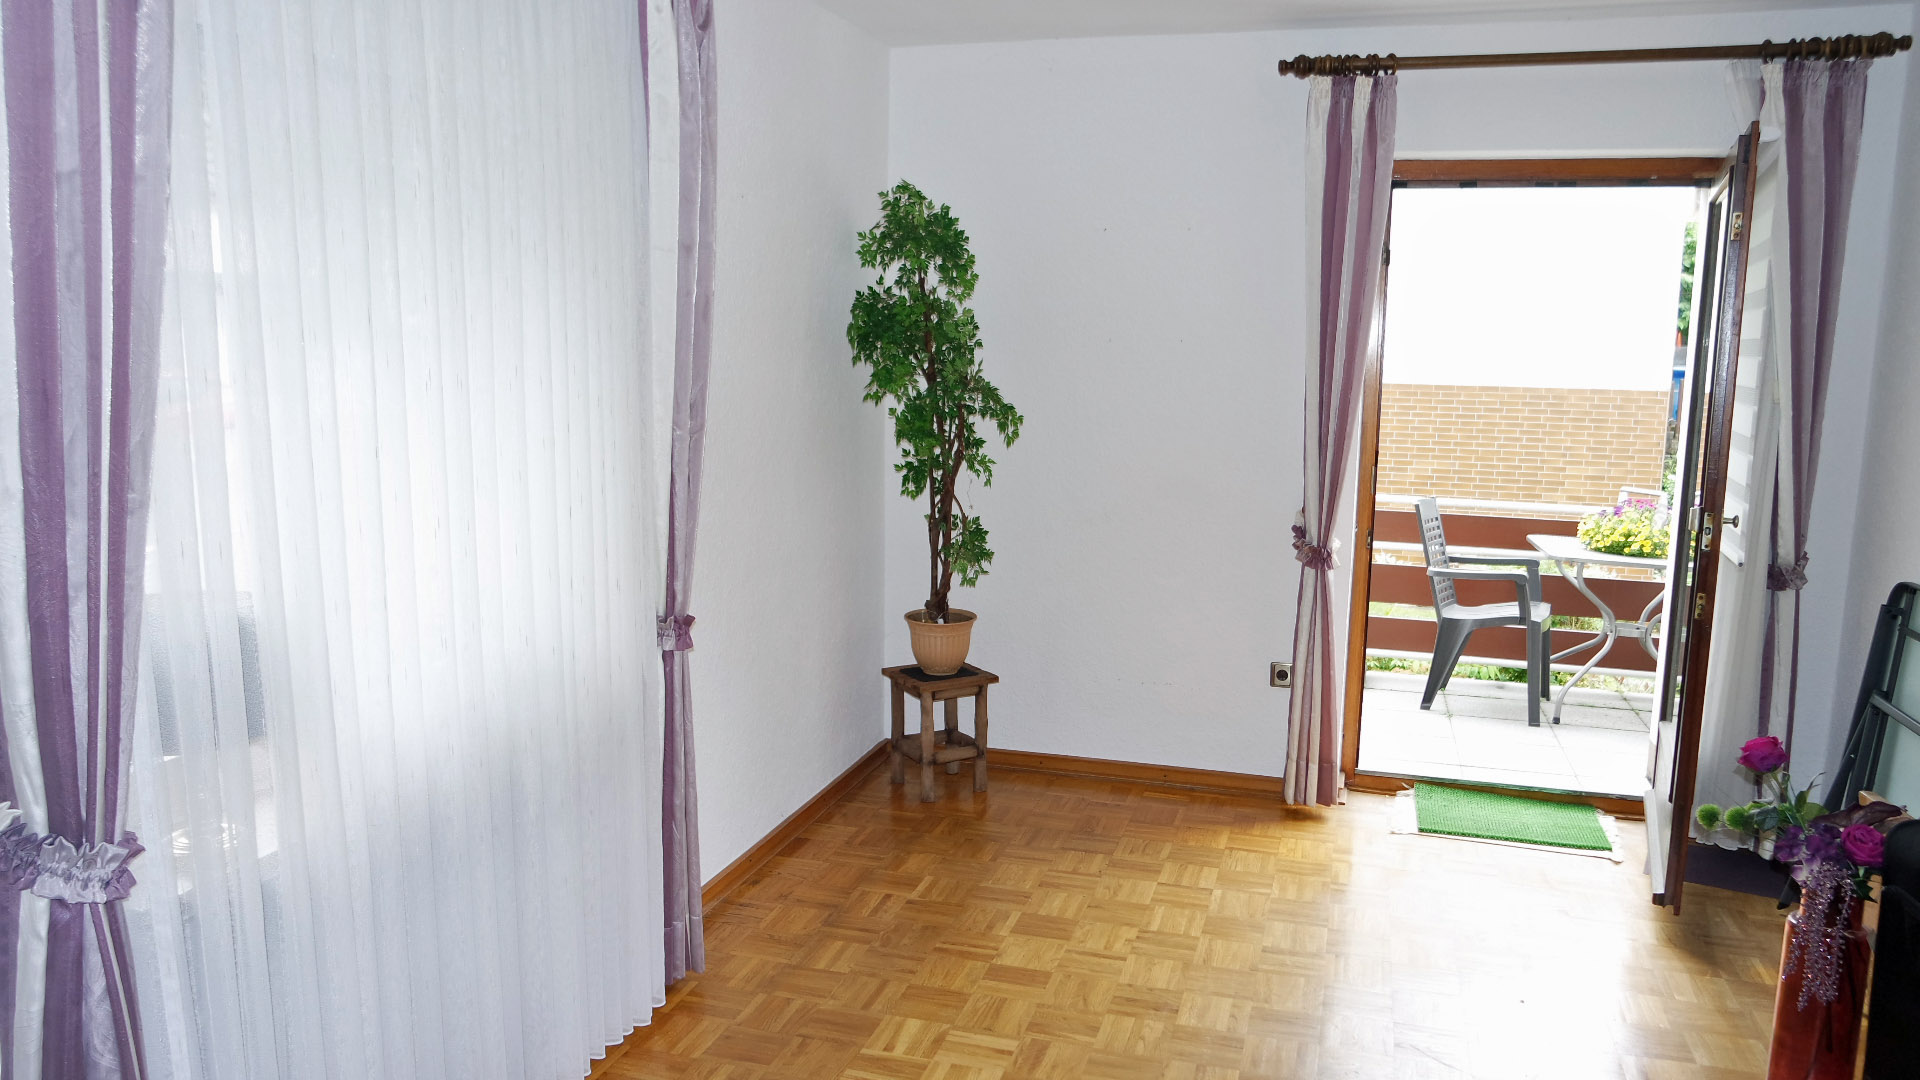 Betzdorf: Zweifamilienhaus in guter, zentraler Wohnlage, Wohnung EG = 66 m²; das  Wohn-/Esszimmer 19 m² und 13 m²